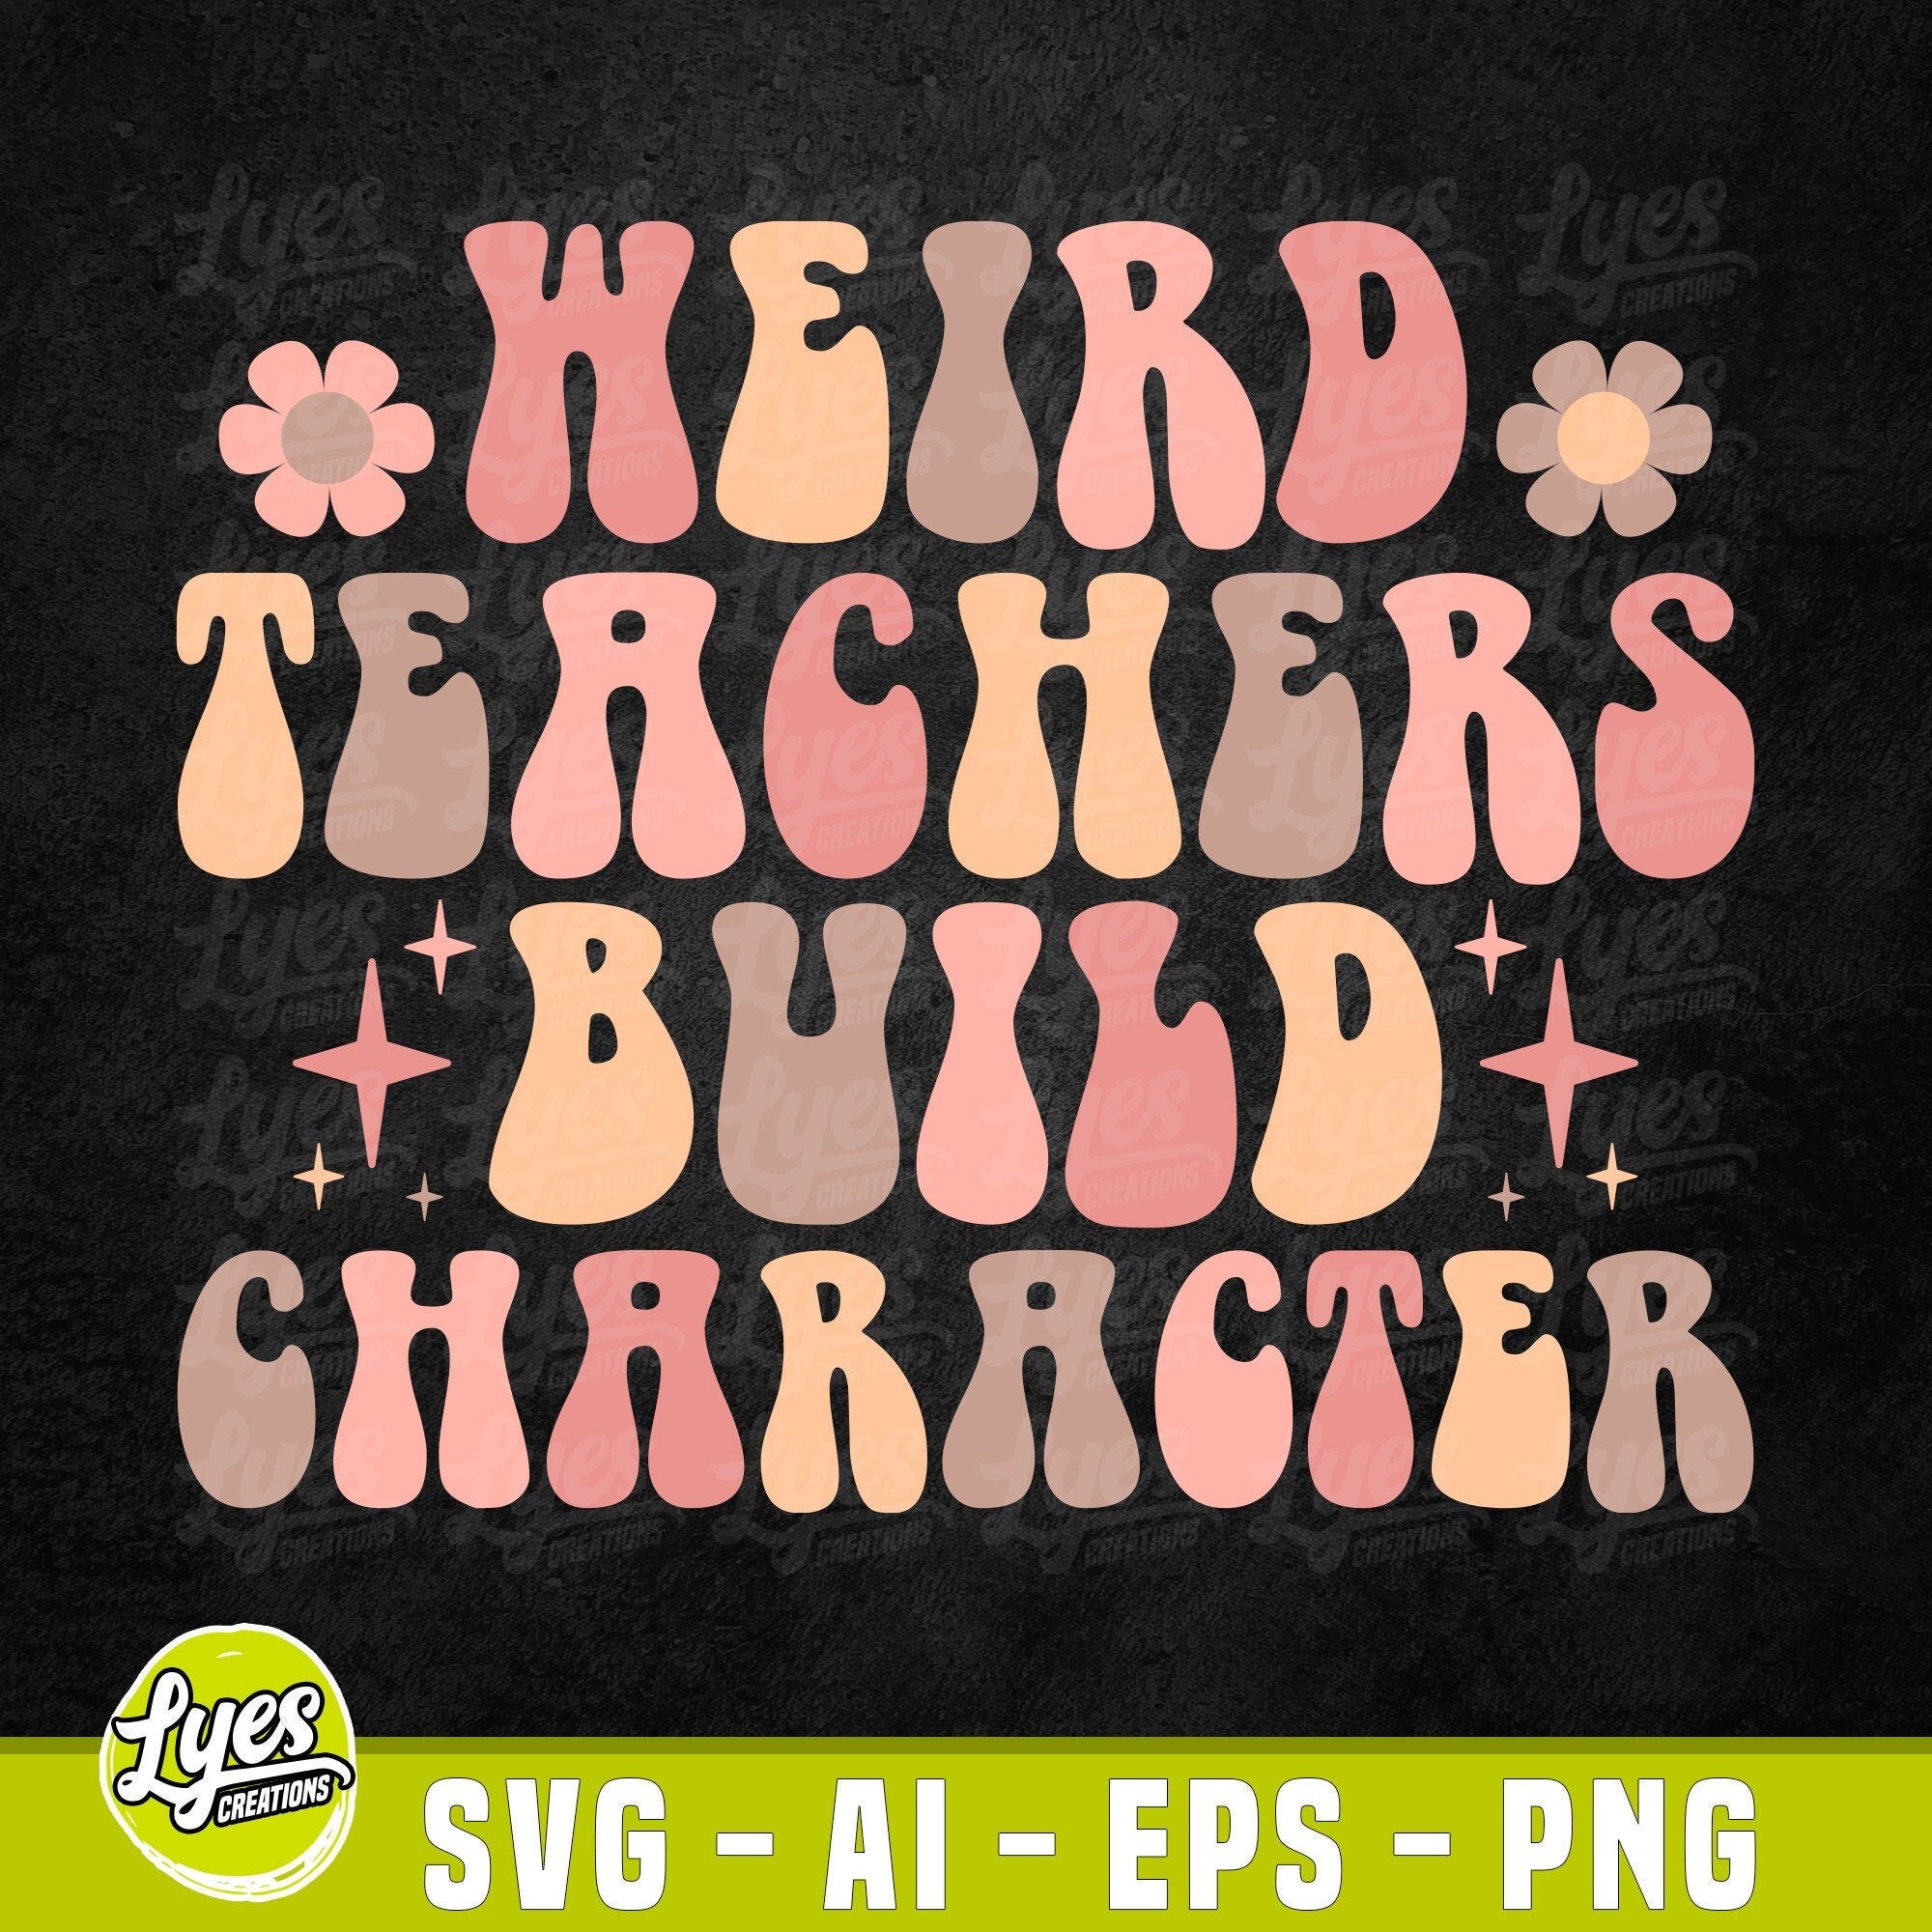 Weird Teachers Build Character Svg, Teacher Appreciation Gift, Teacher Groovy Svg, Teacher SVG, Funny Teacher Sayings Digital PNG